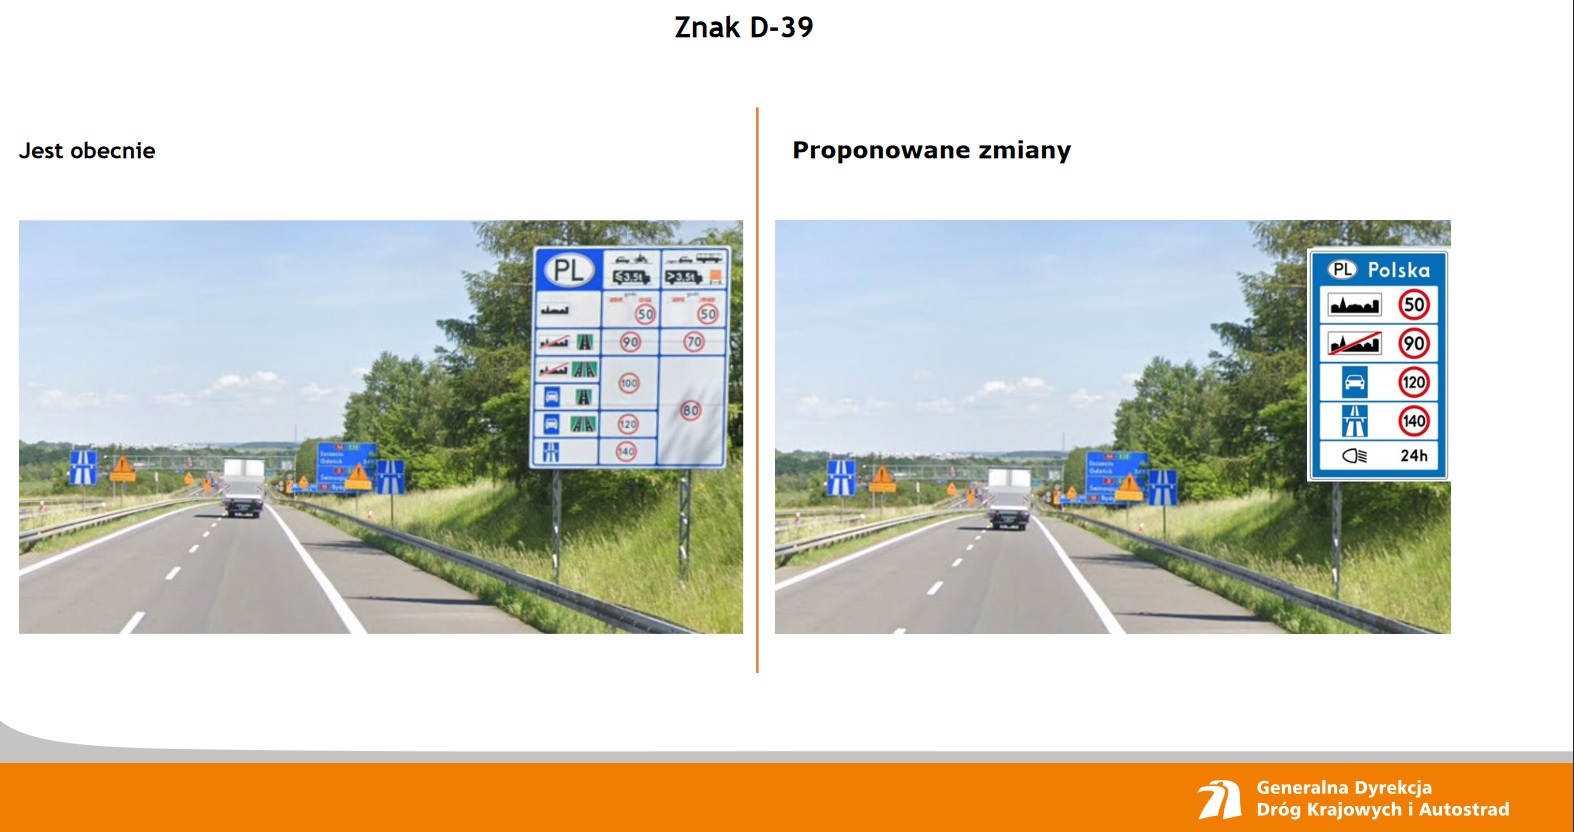 Uproszczenie znakow przy polskich drogach